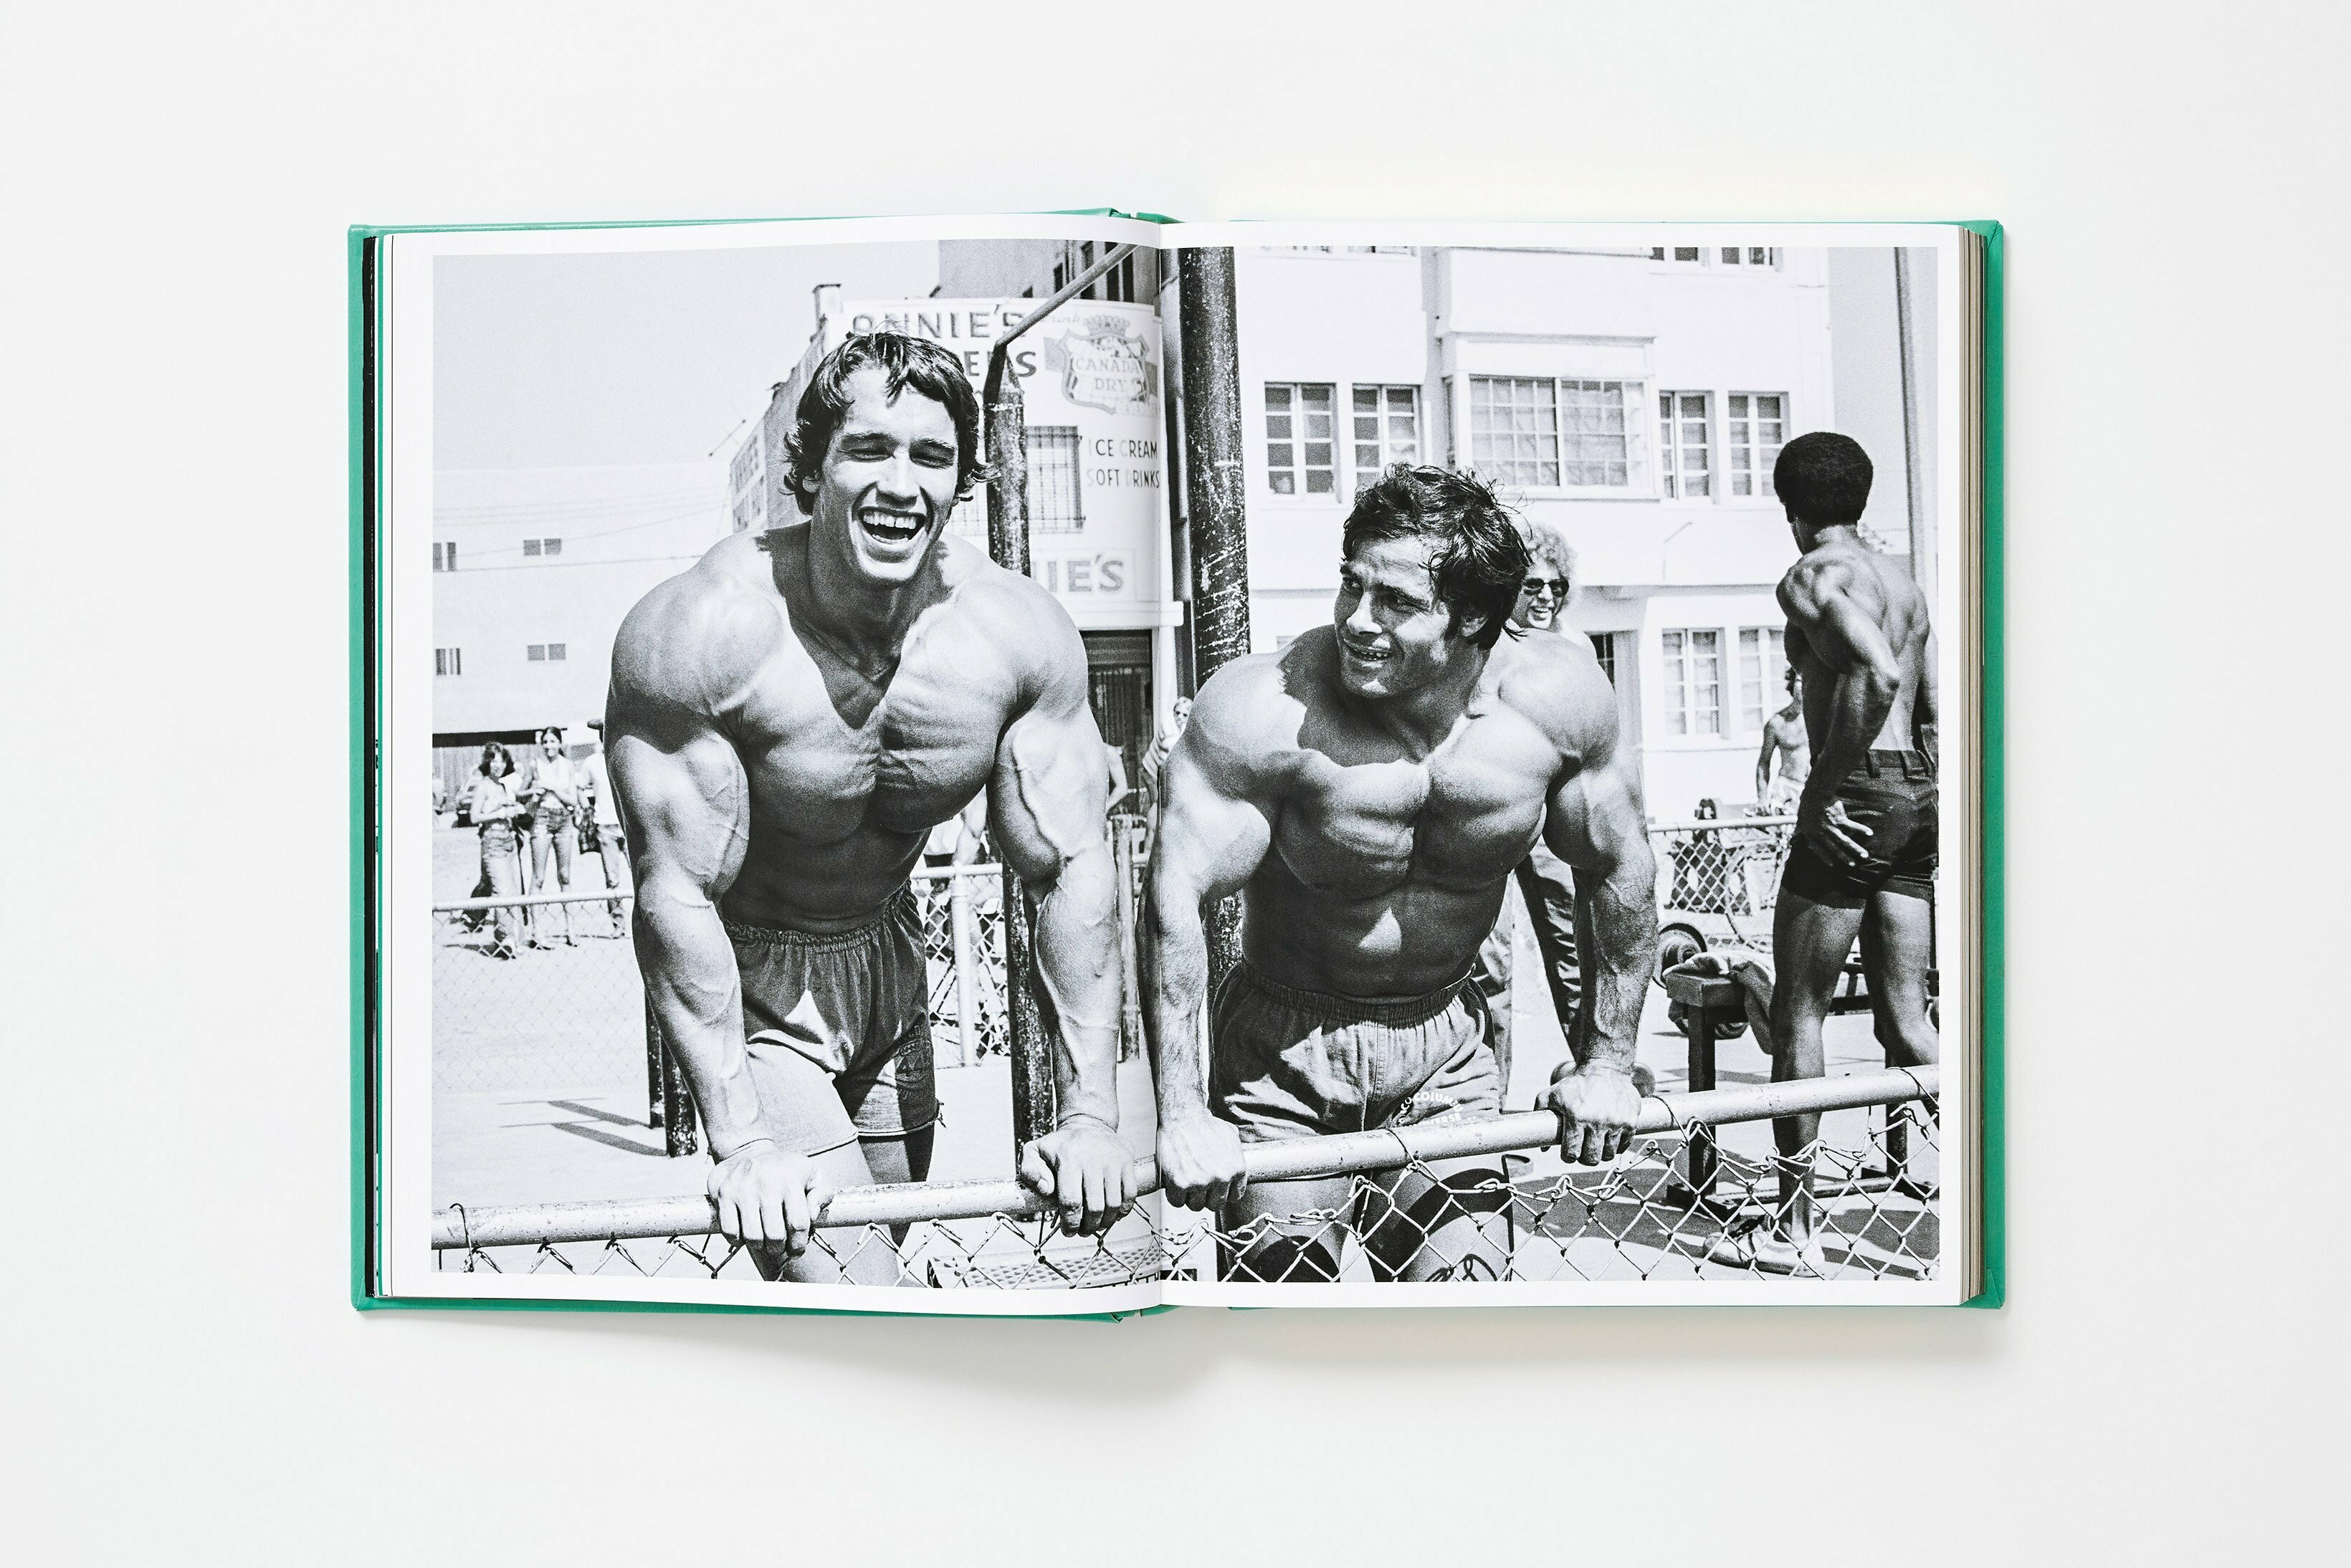 Arnold Schwarzenegger lanzará un libro de autoayuda